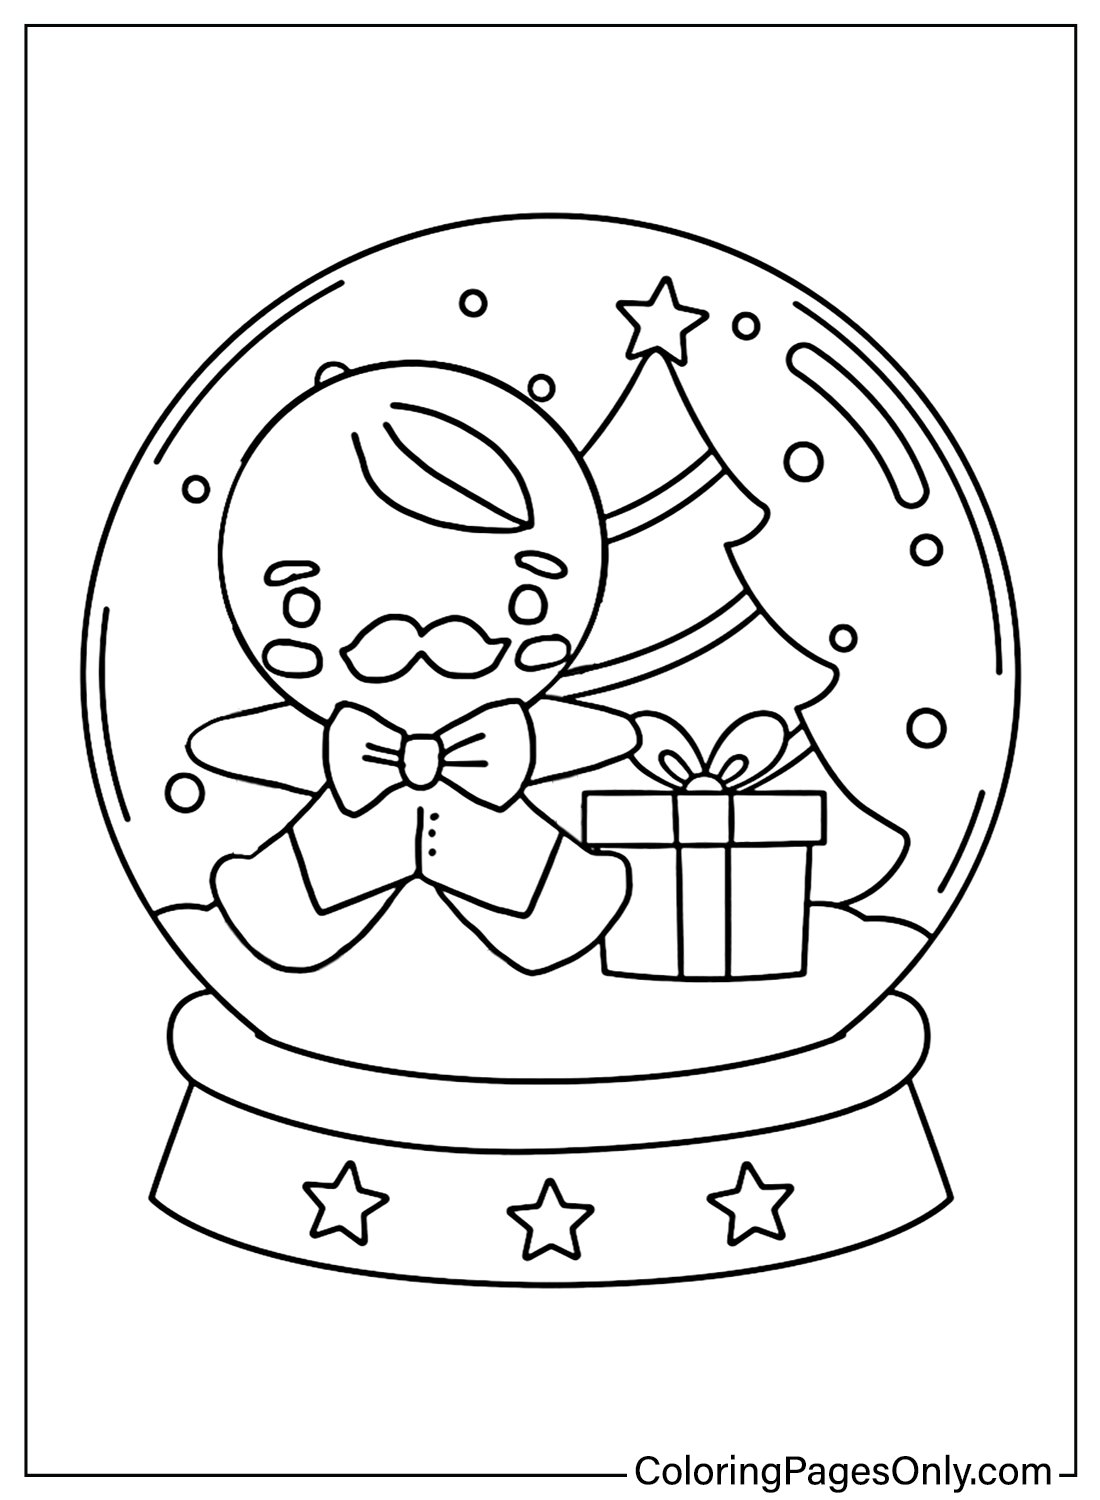 Página para colorir do boneco de gengibre do globo de neve do globo de neve